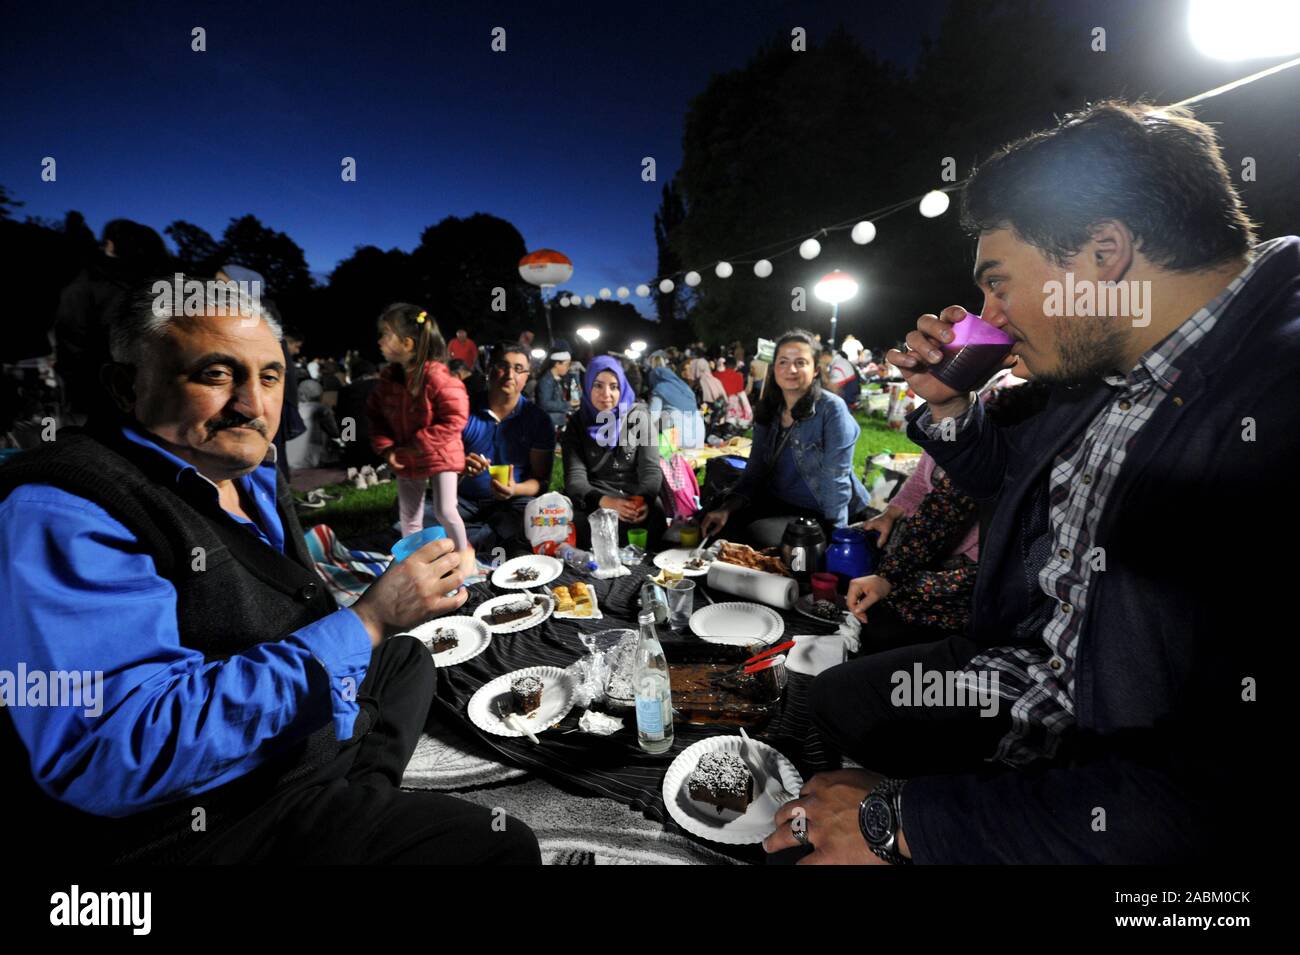 An der Offenen (F) Luft Iftar der Muslimischen Rat München Hunderte Muslime treffen zu brechen zusammen Fasten unter freiem Himmel in der Nähe des Luitpoldparks. [Automatisierte Übersetzung] Stockfoto